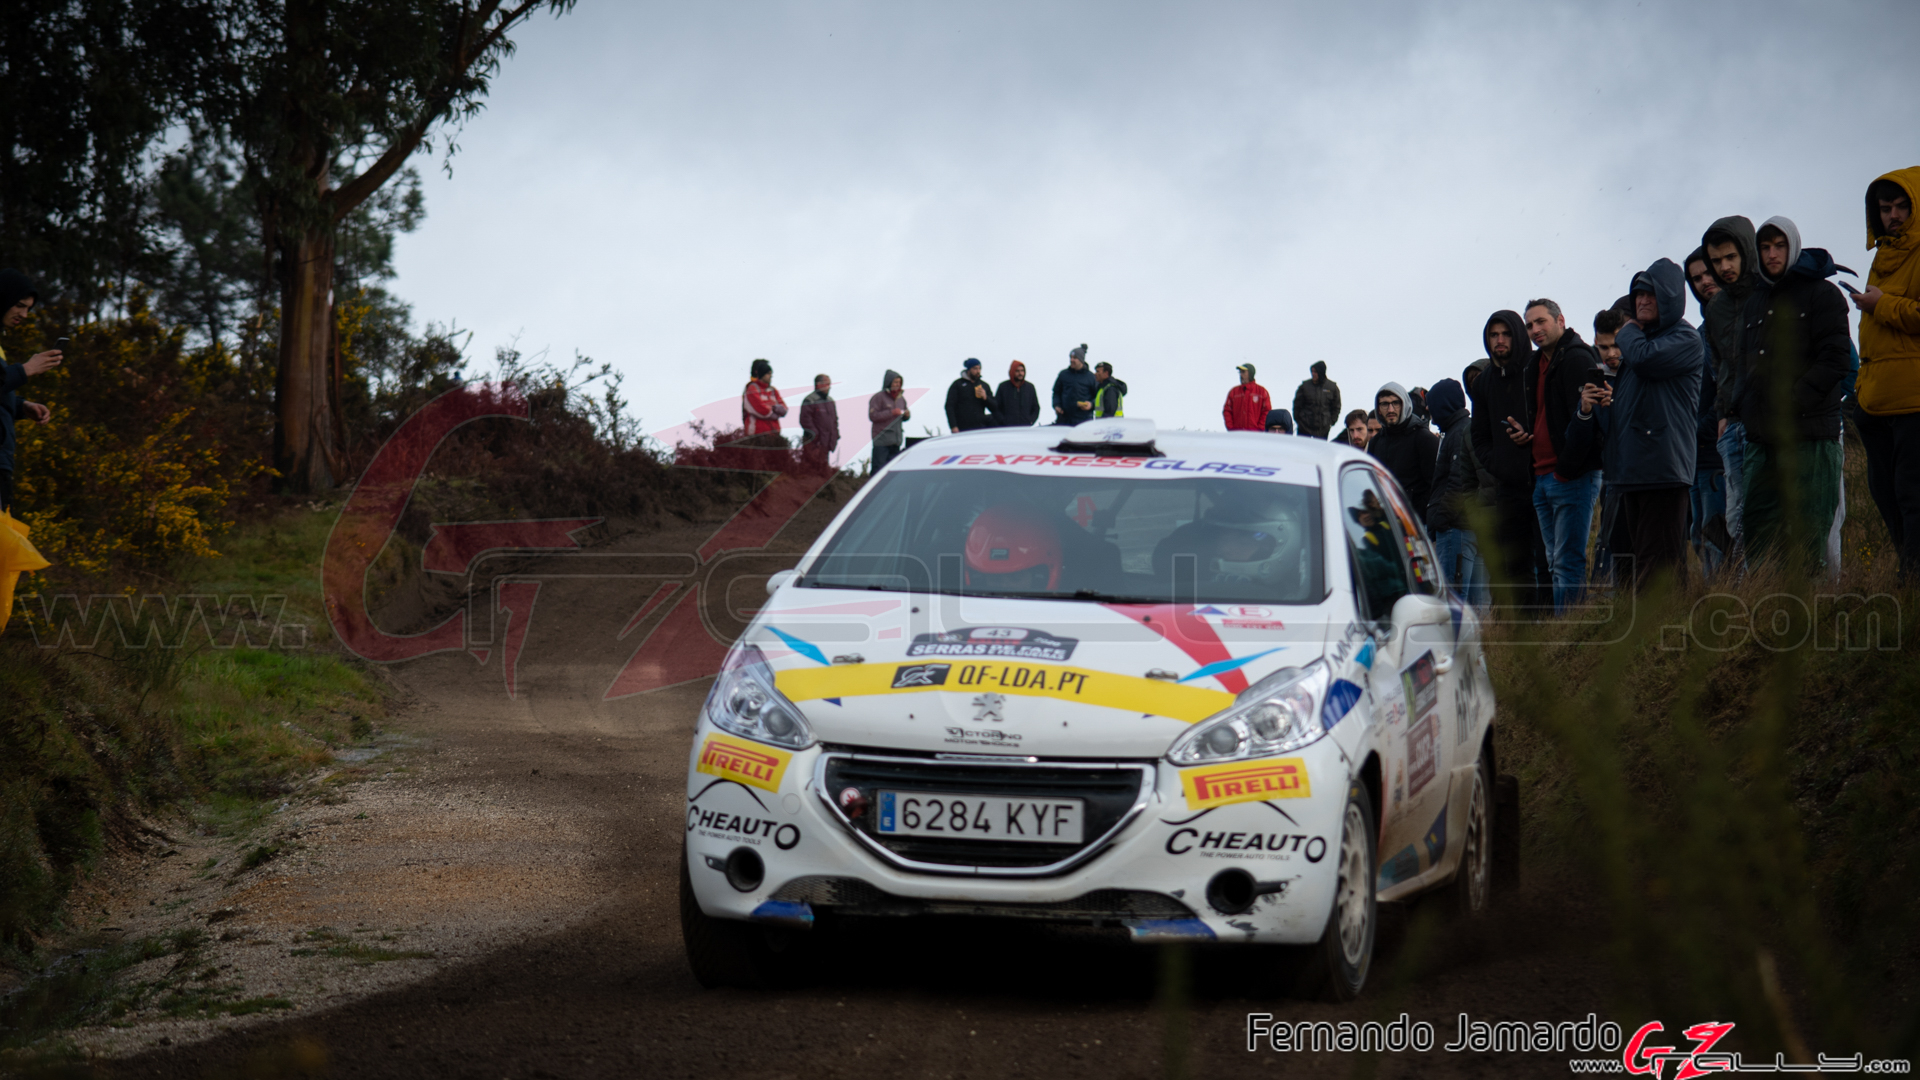 Rally Serras de Fafe 2020 - Fernando Jamardo